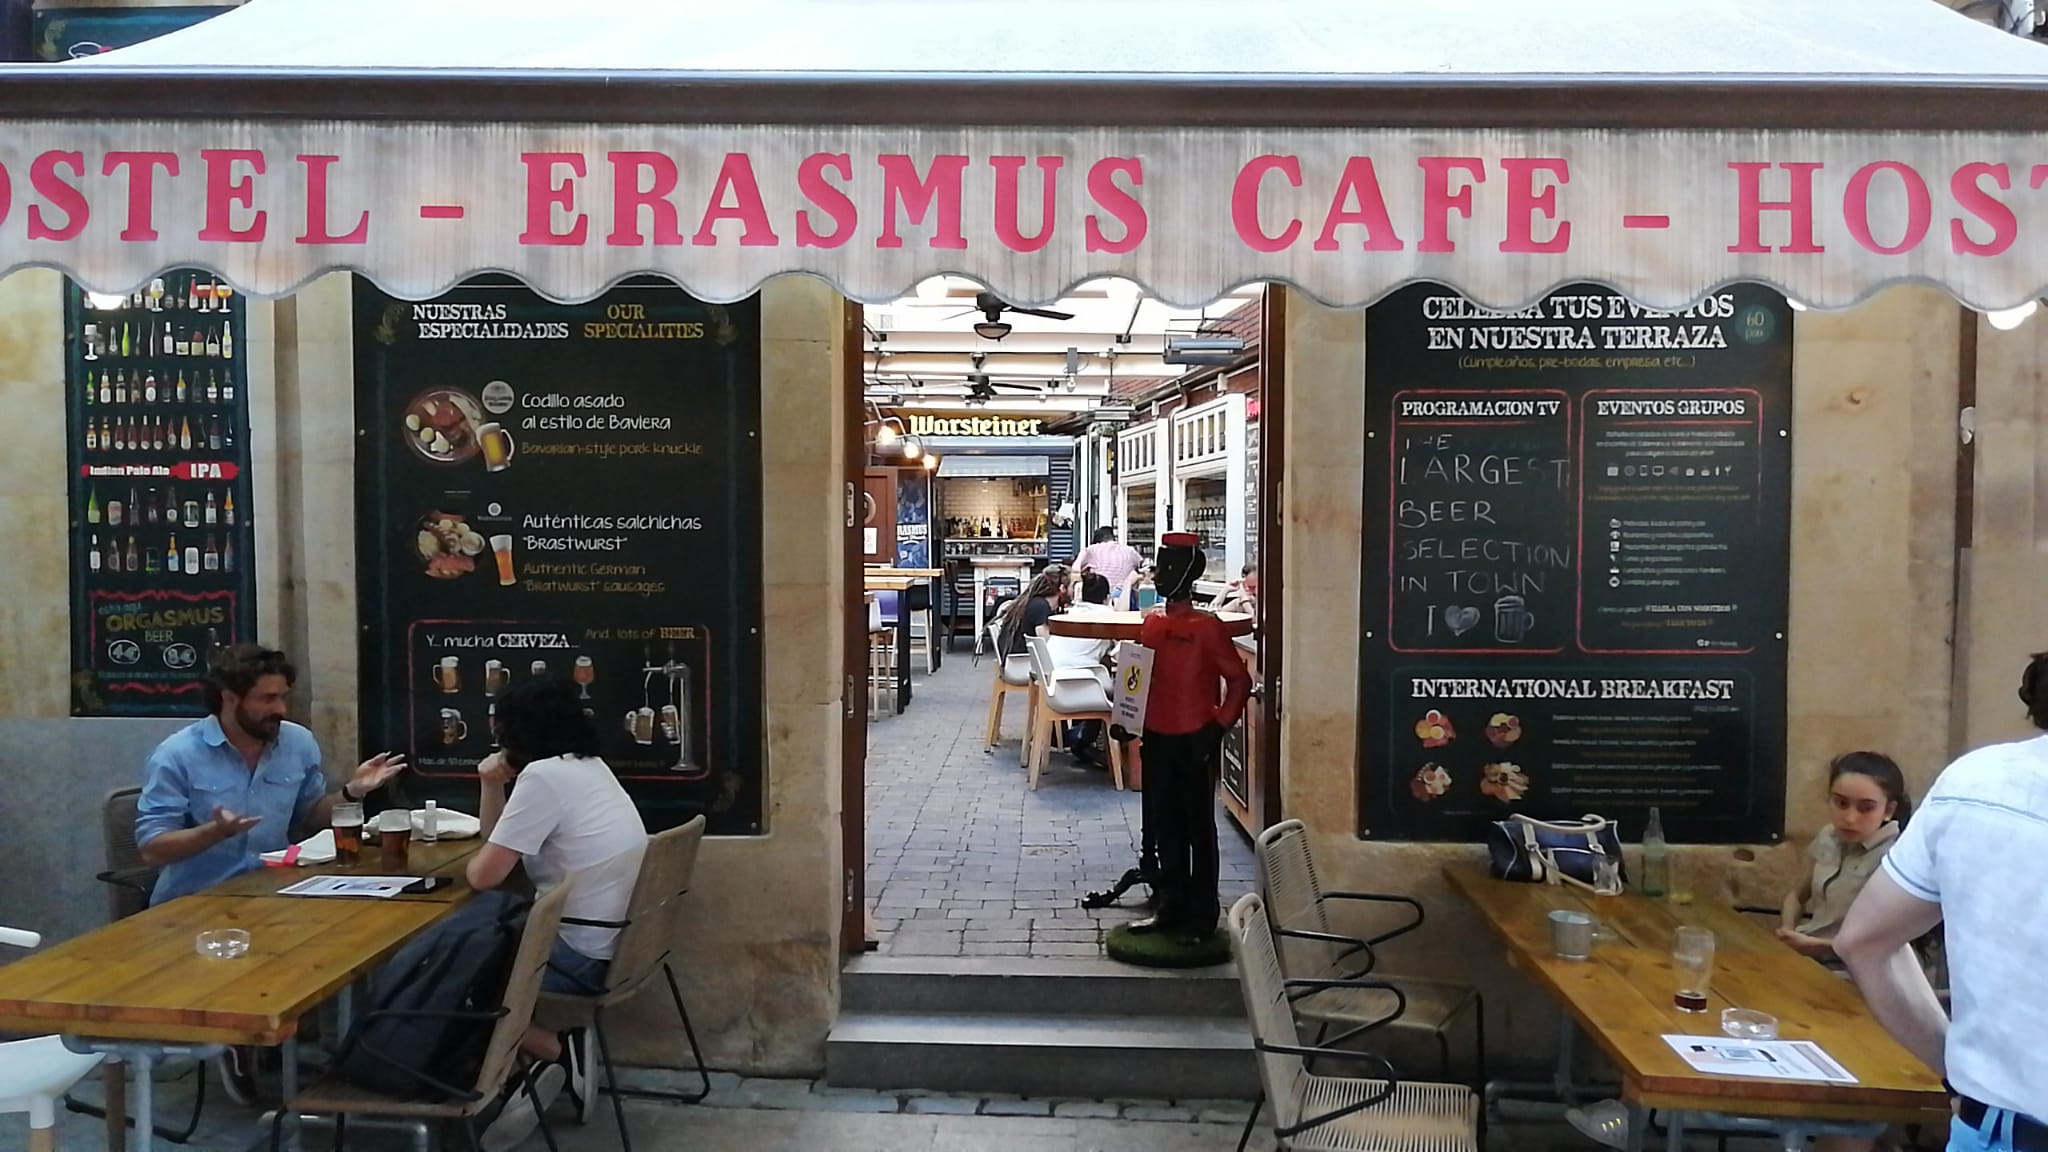 El Erasmus dispone de una terraza en la calle Meléndez y otra en el interior para dar doble servicio a sus clientes.